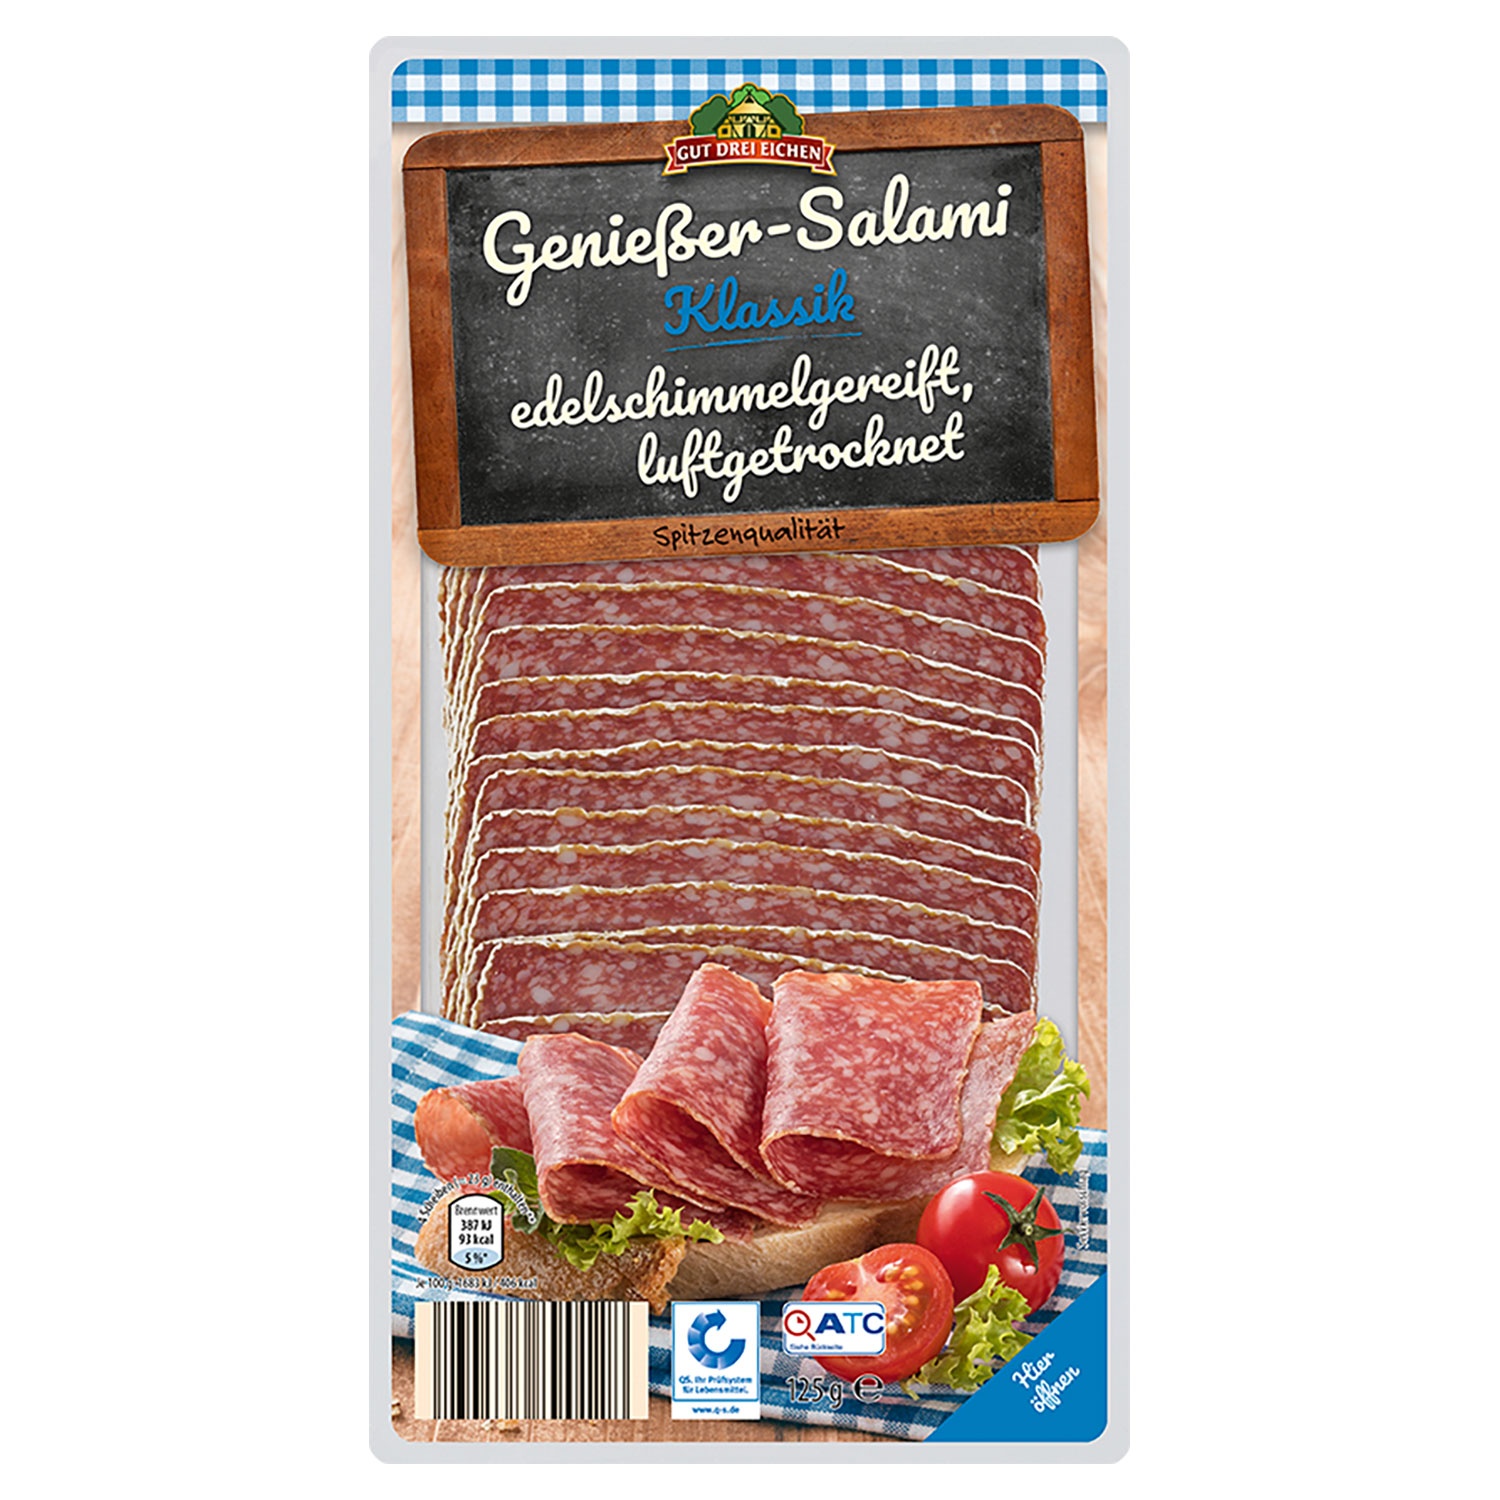 GUT DREI EICHEN Genießer-Salami 125 g